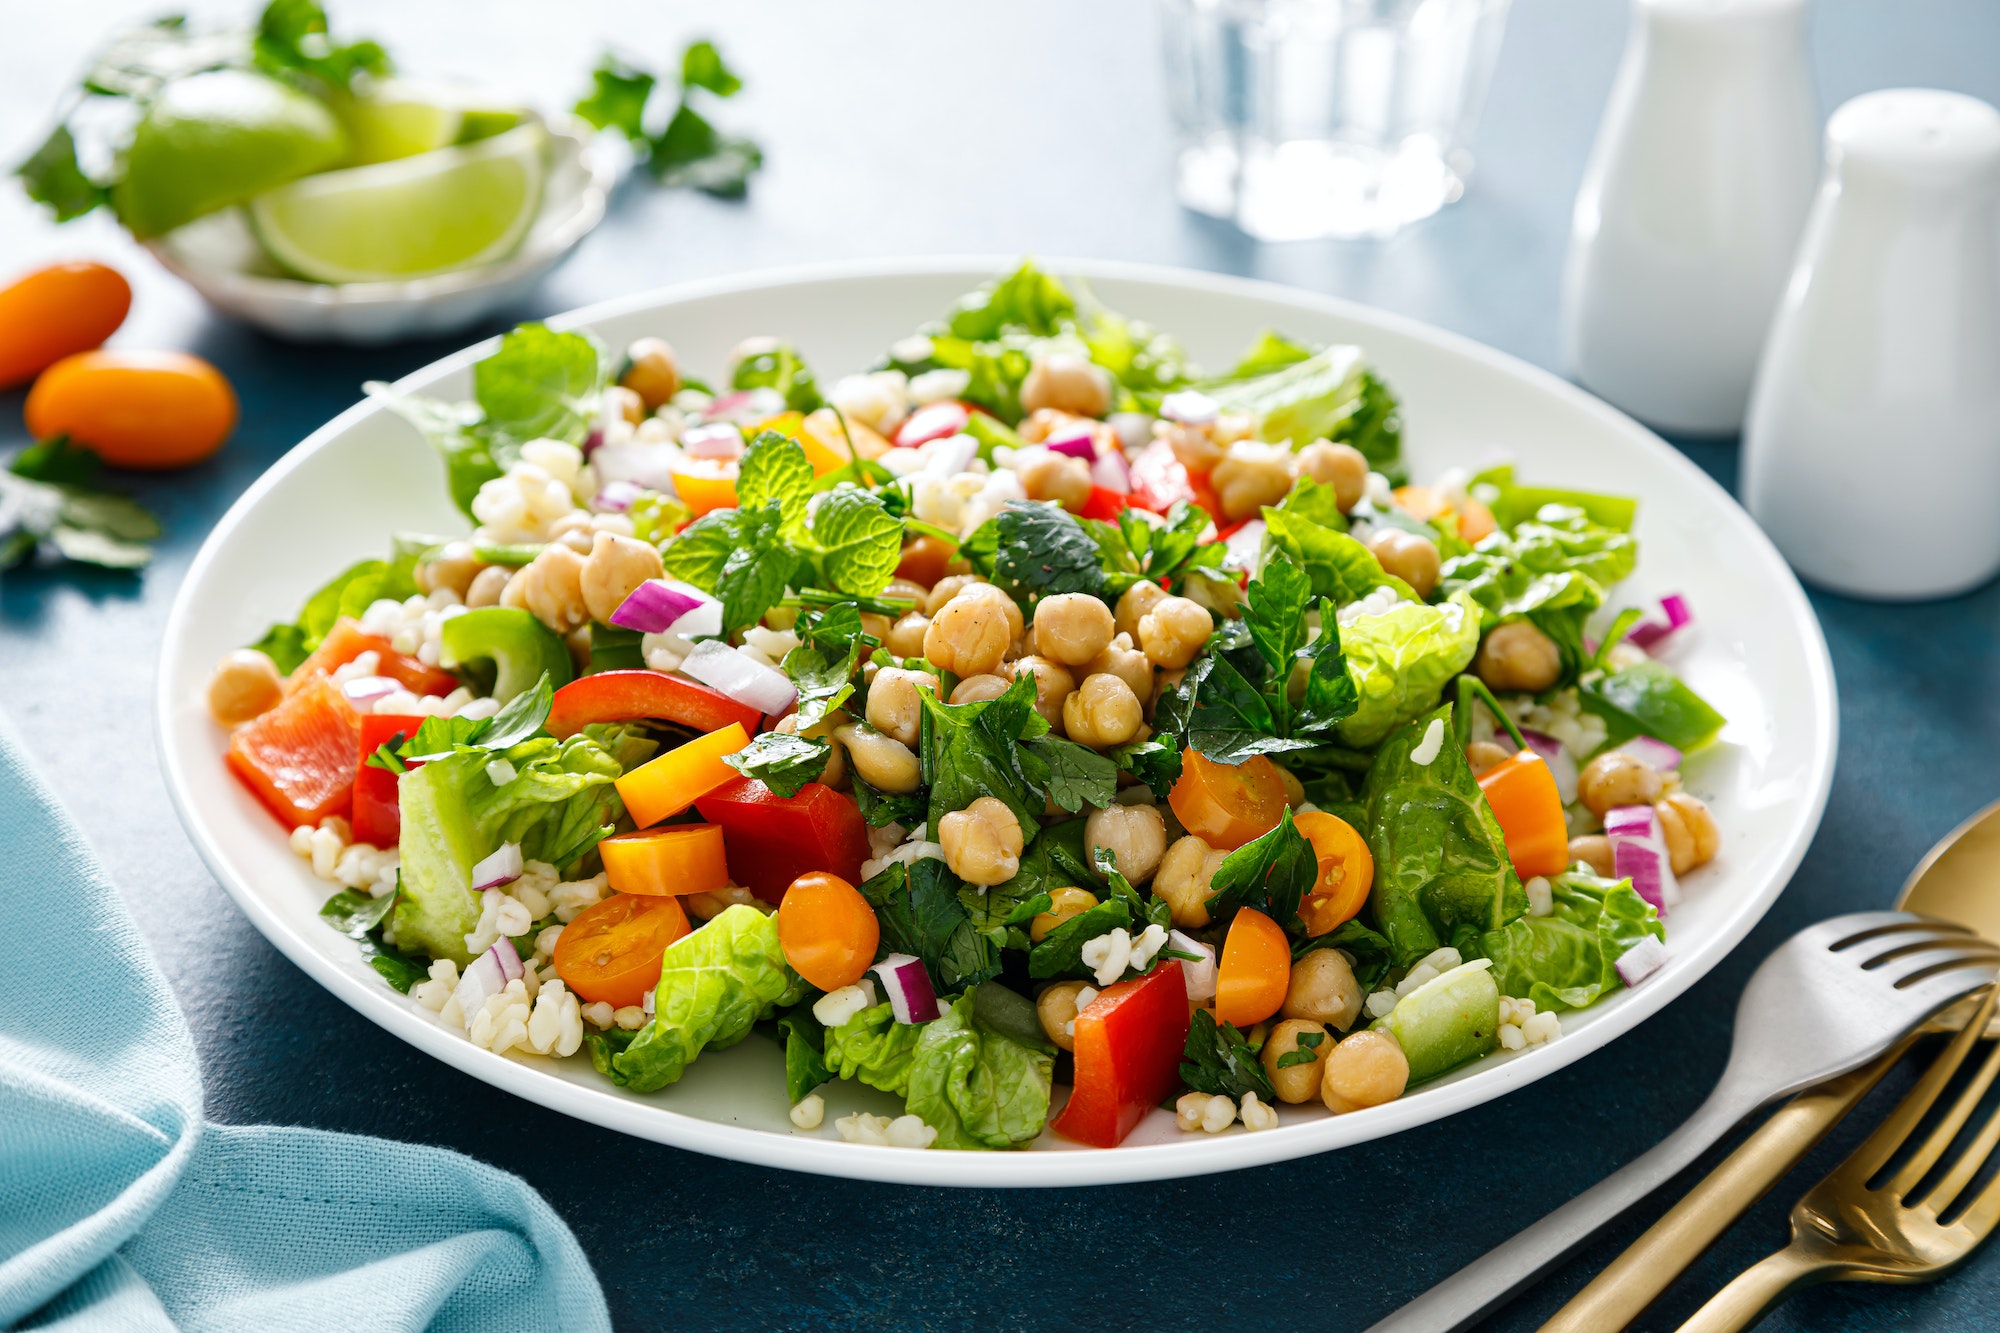 Ontdek 10 ideeën voor gemengde salades om af te vallen zonder aan smaak in te boeten